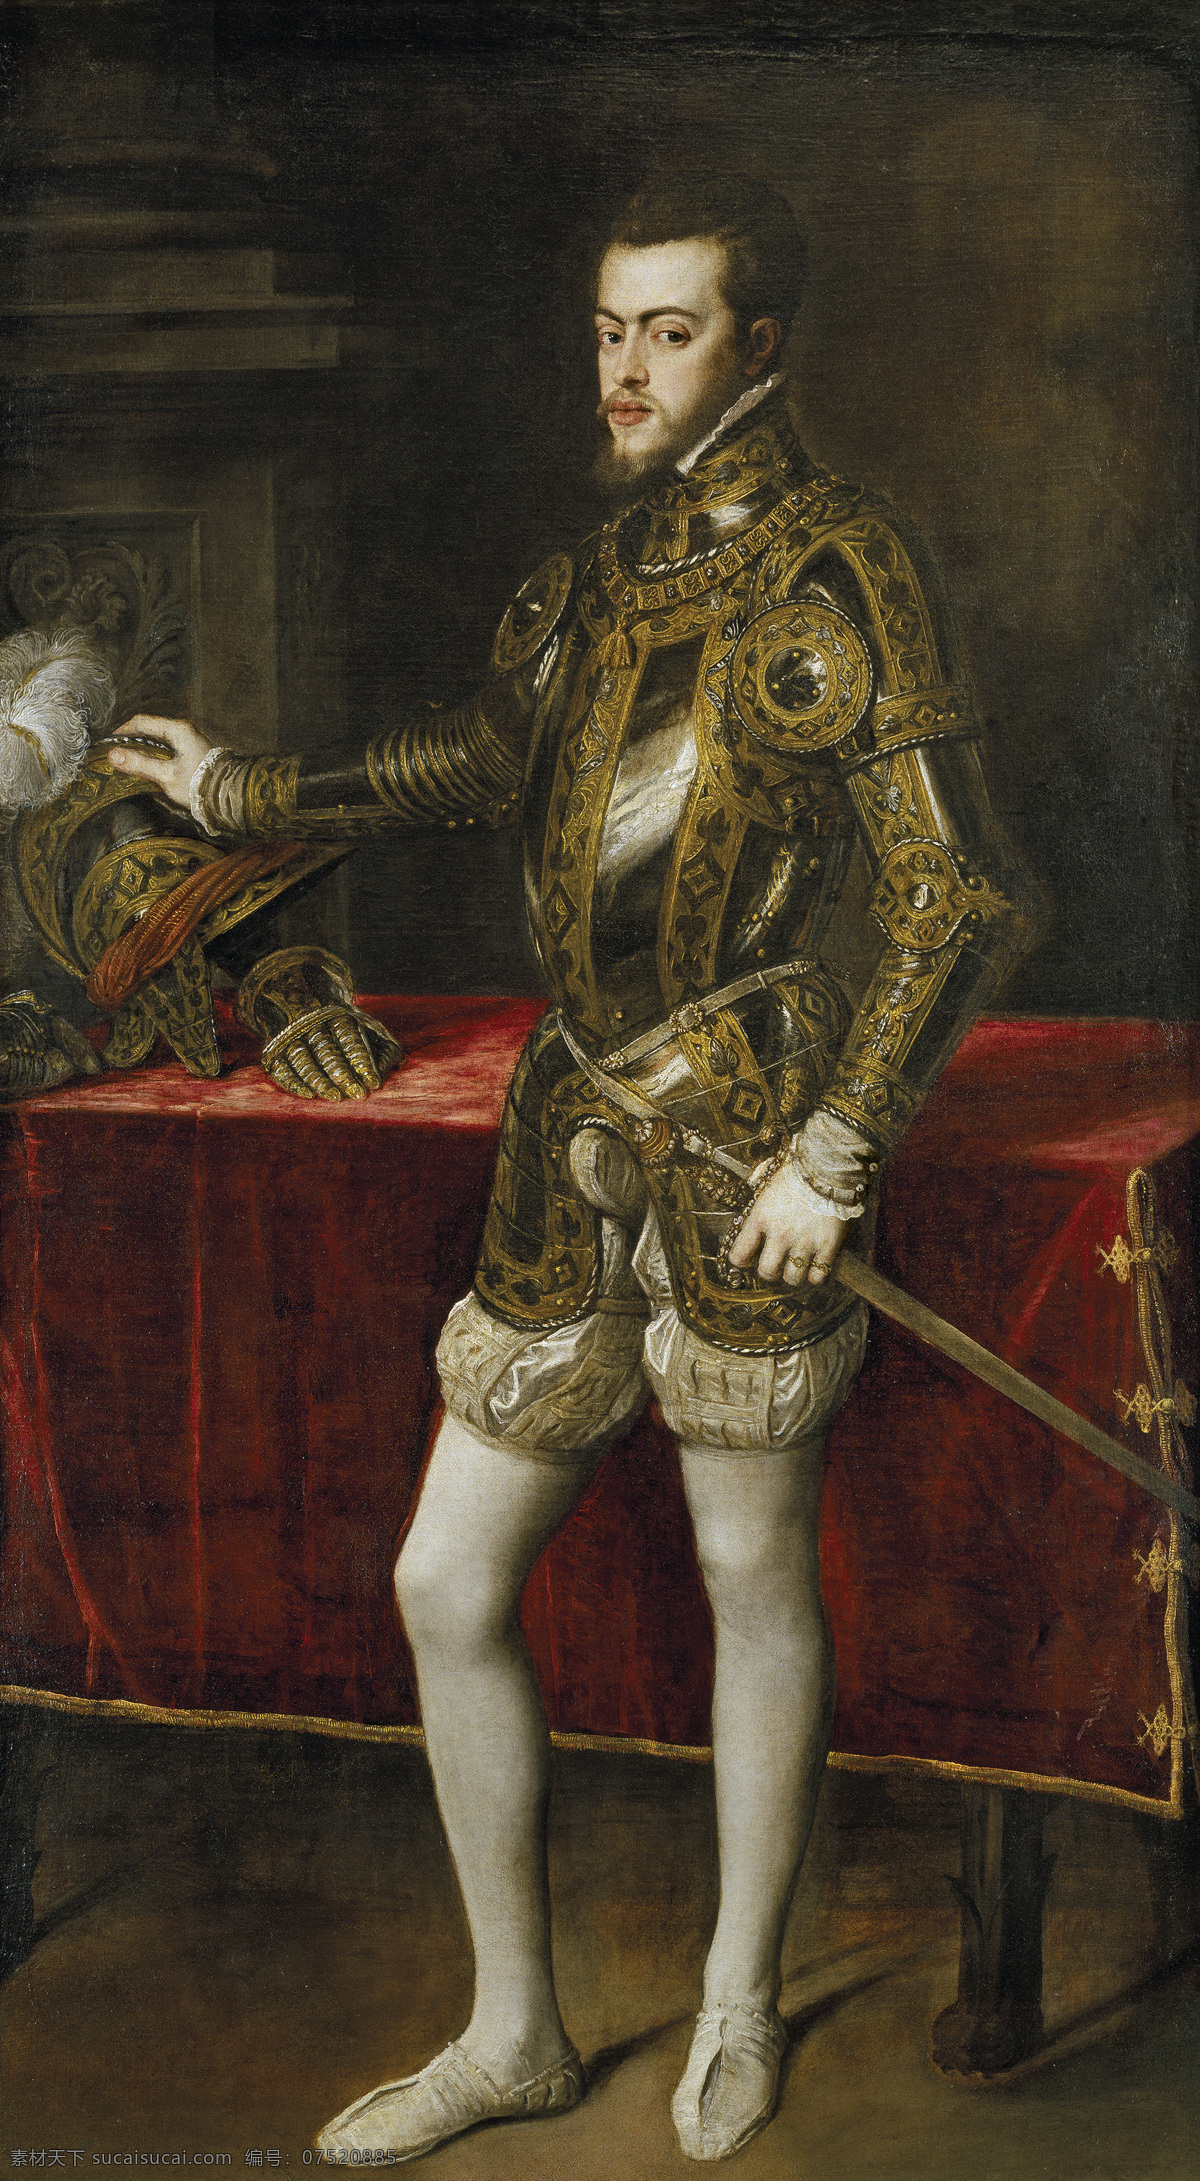 绘画书法 文化艺术 油画 菲利普二世 查理的世之子 葡萄牙 公主 莎贝尔 英国 玛丽 一世 之夫 菲利普 三世 父 家居装饰素材